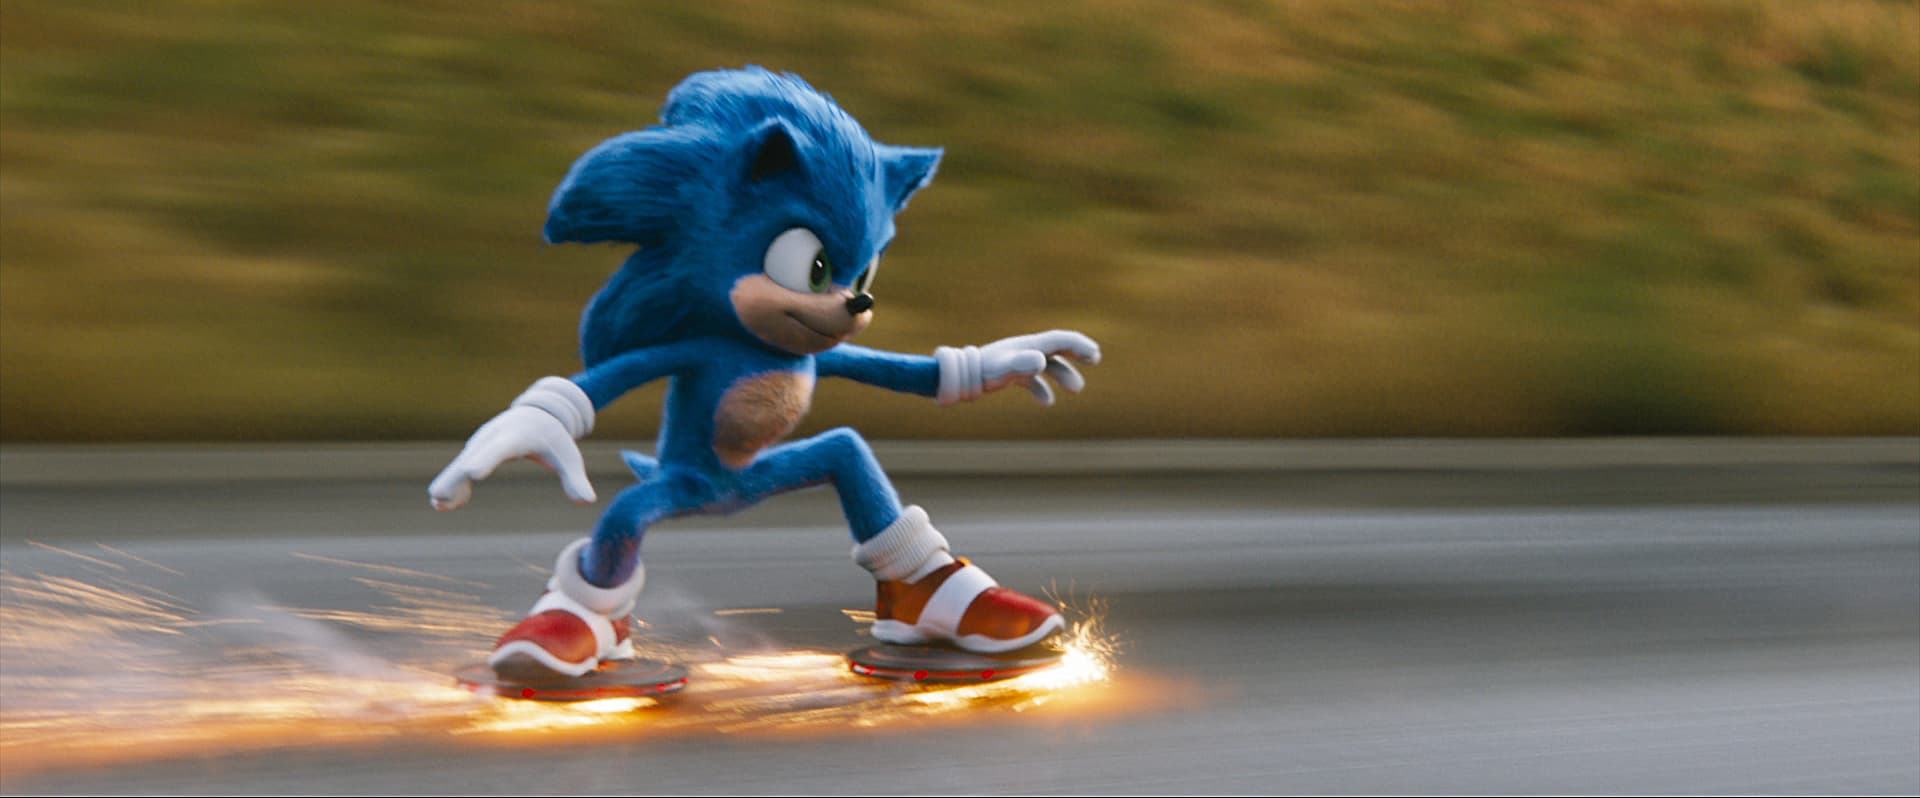 Sonic auf dem schnellen Weg um seine Freunde zu retten